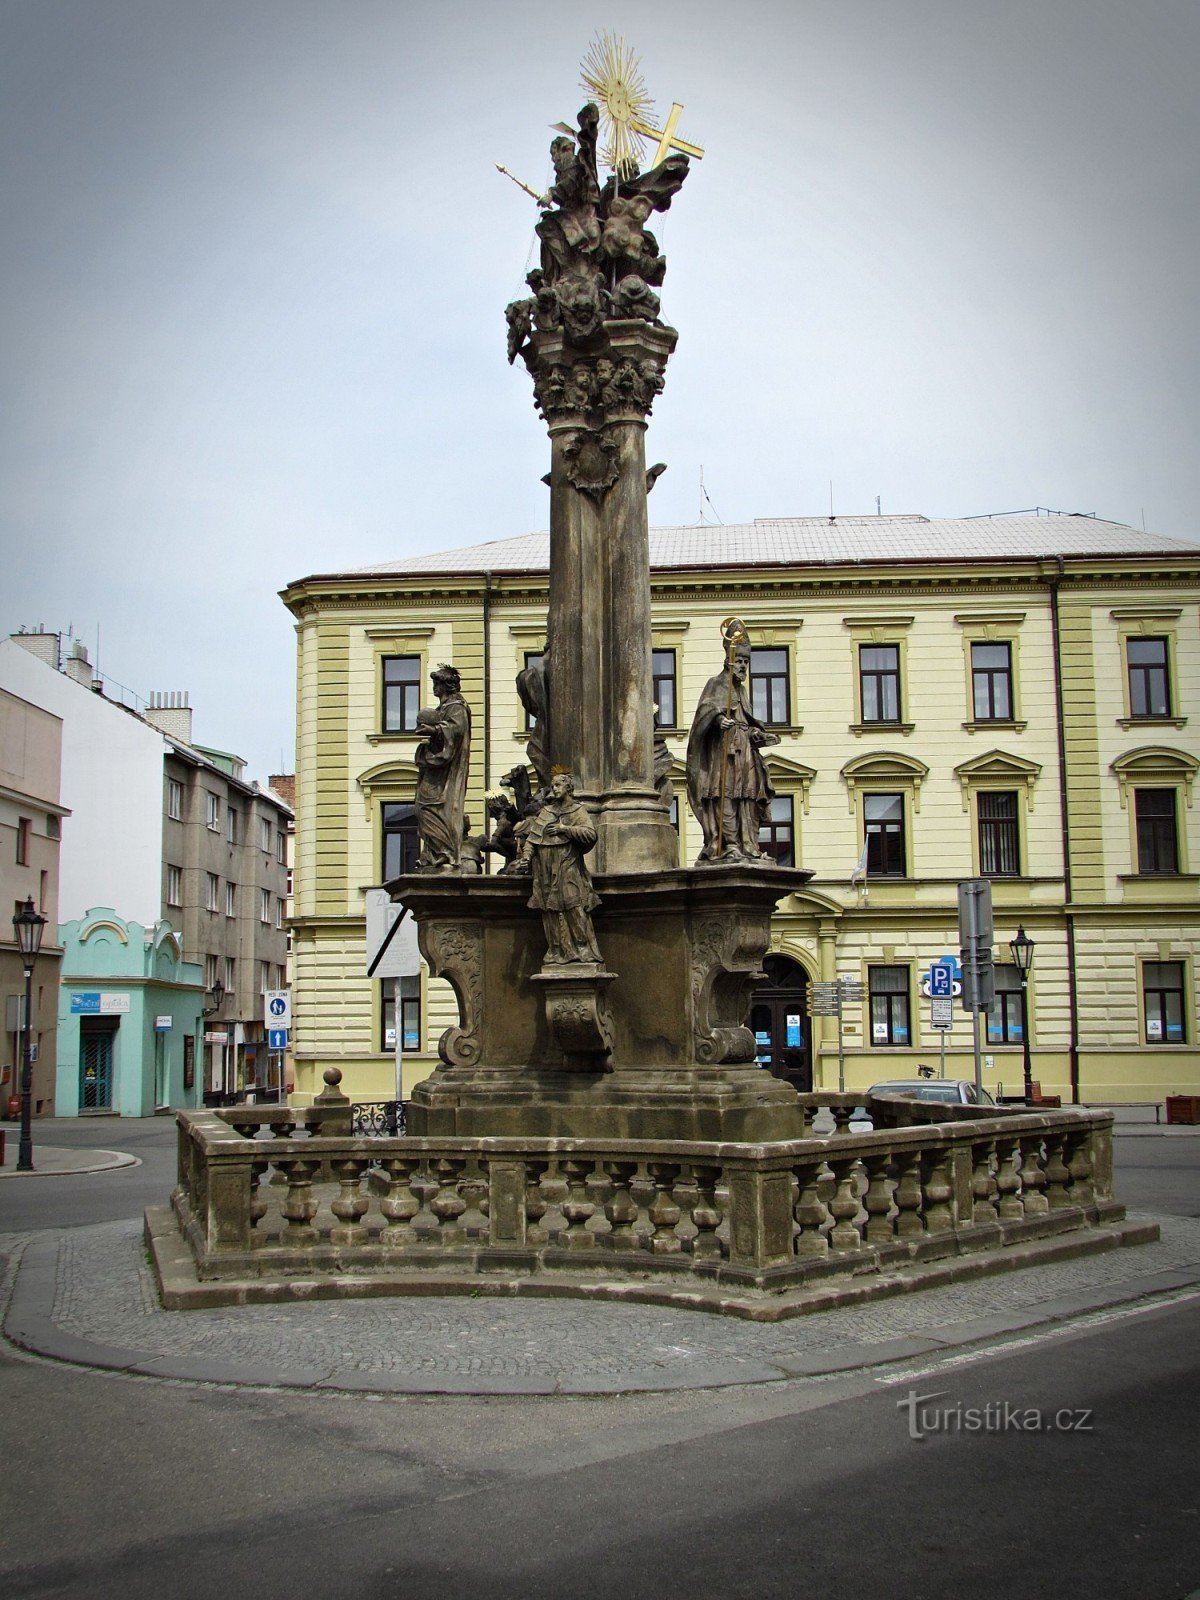 Kužni steber sv. Trojice na Riegrové náměstí v Kroměřížu